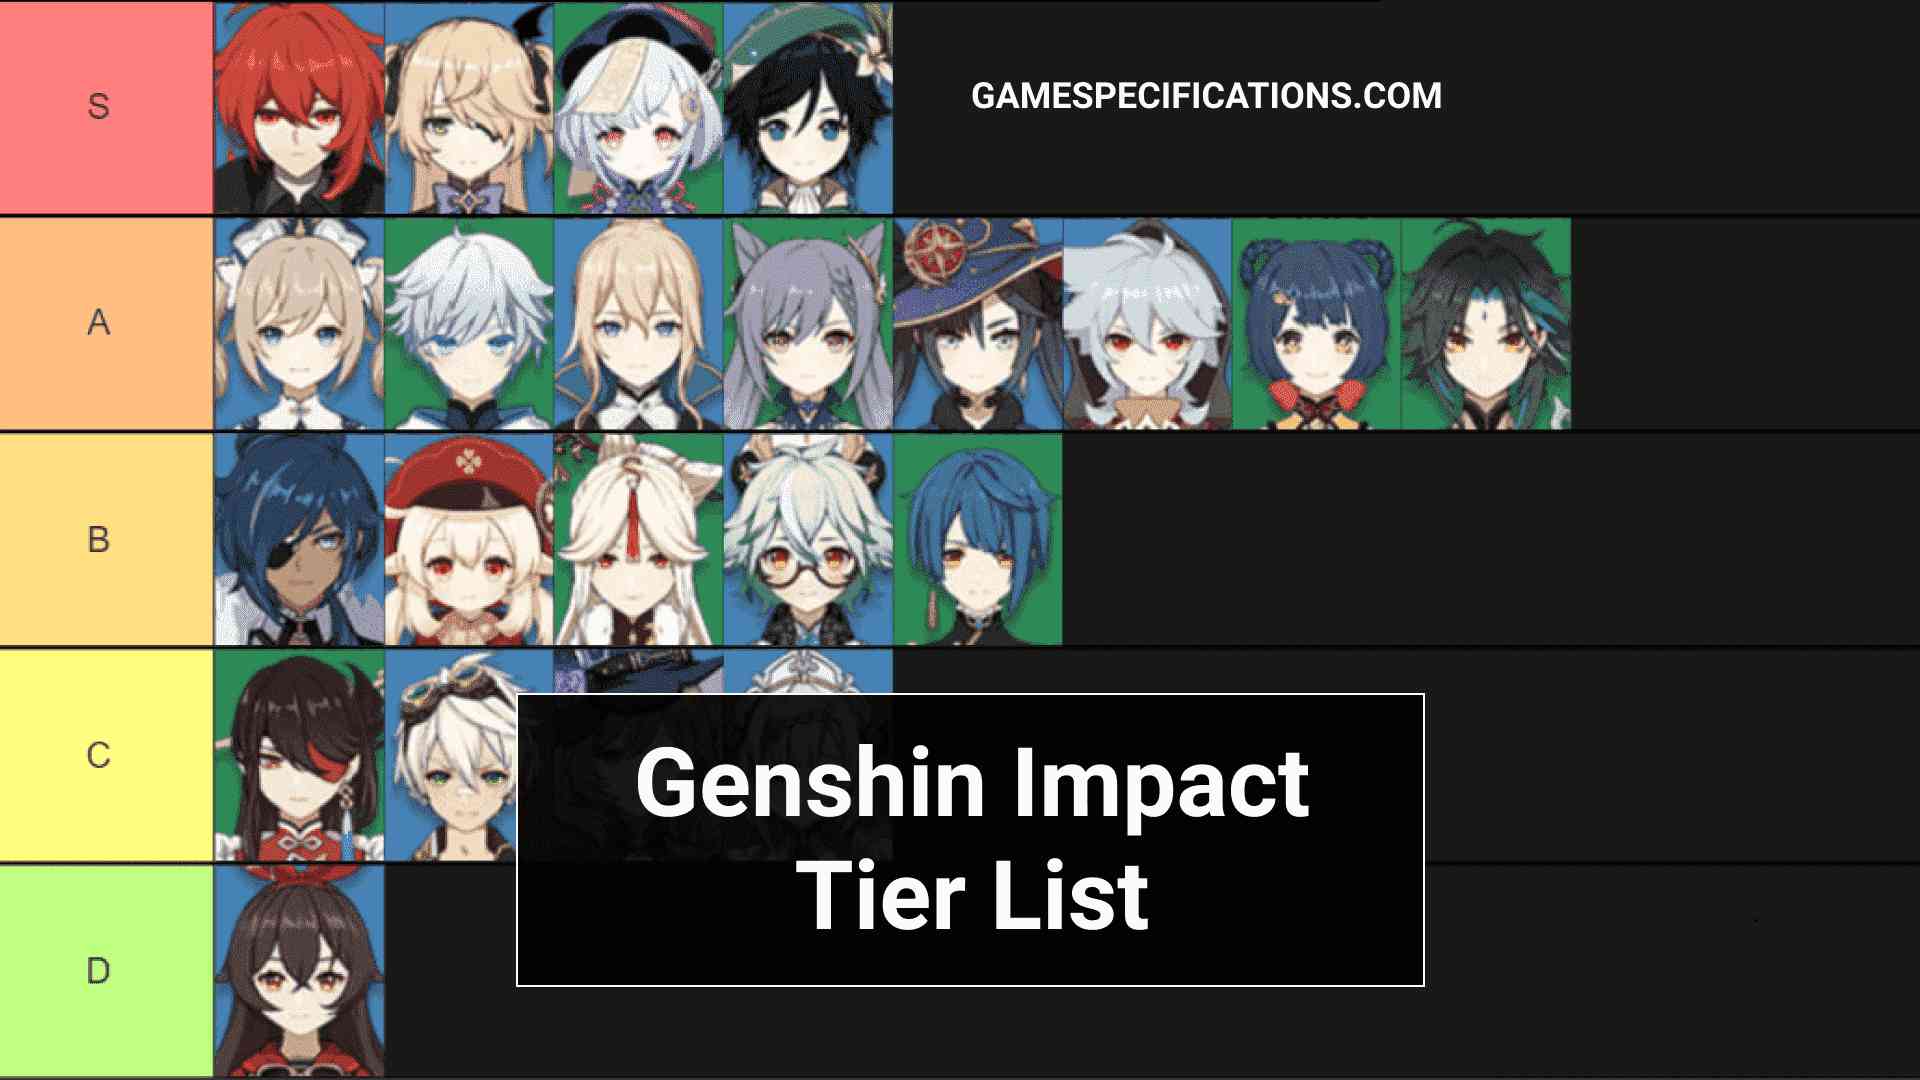 Genshin impact characters list. Геншин Tier list. Тир лист Геншин Импакт. Тир лист Геншин Импакт 2021. Лист персонажей Геншин.